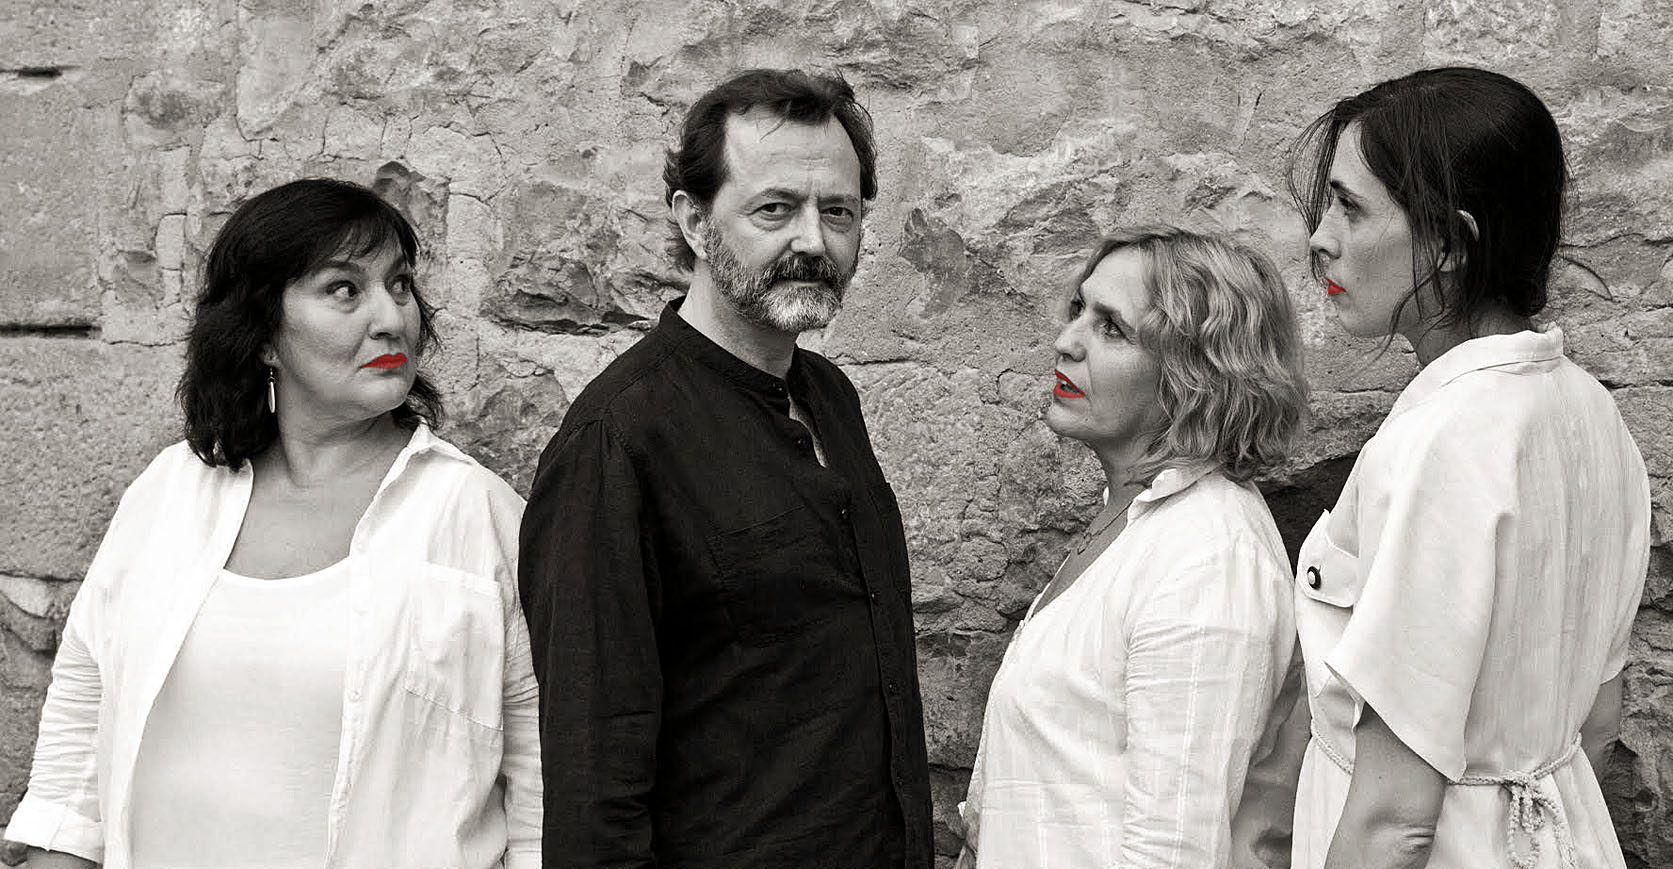 Pilar Martínez, Manuel Veiga i les vallesanes Mònica Lucchetti i Laura López interpretaran ‘A x amor’ a partir d’aquest dissabte al Teatre de Ponent